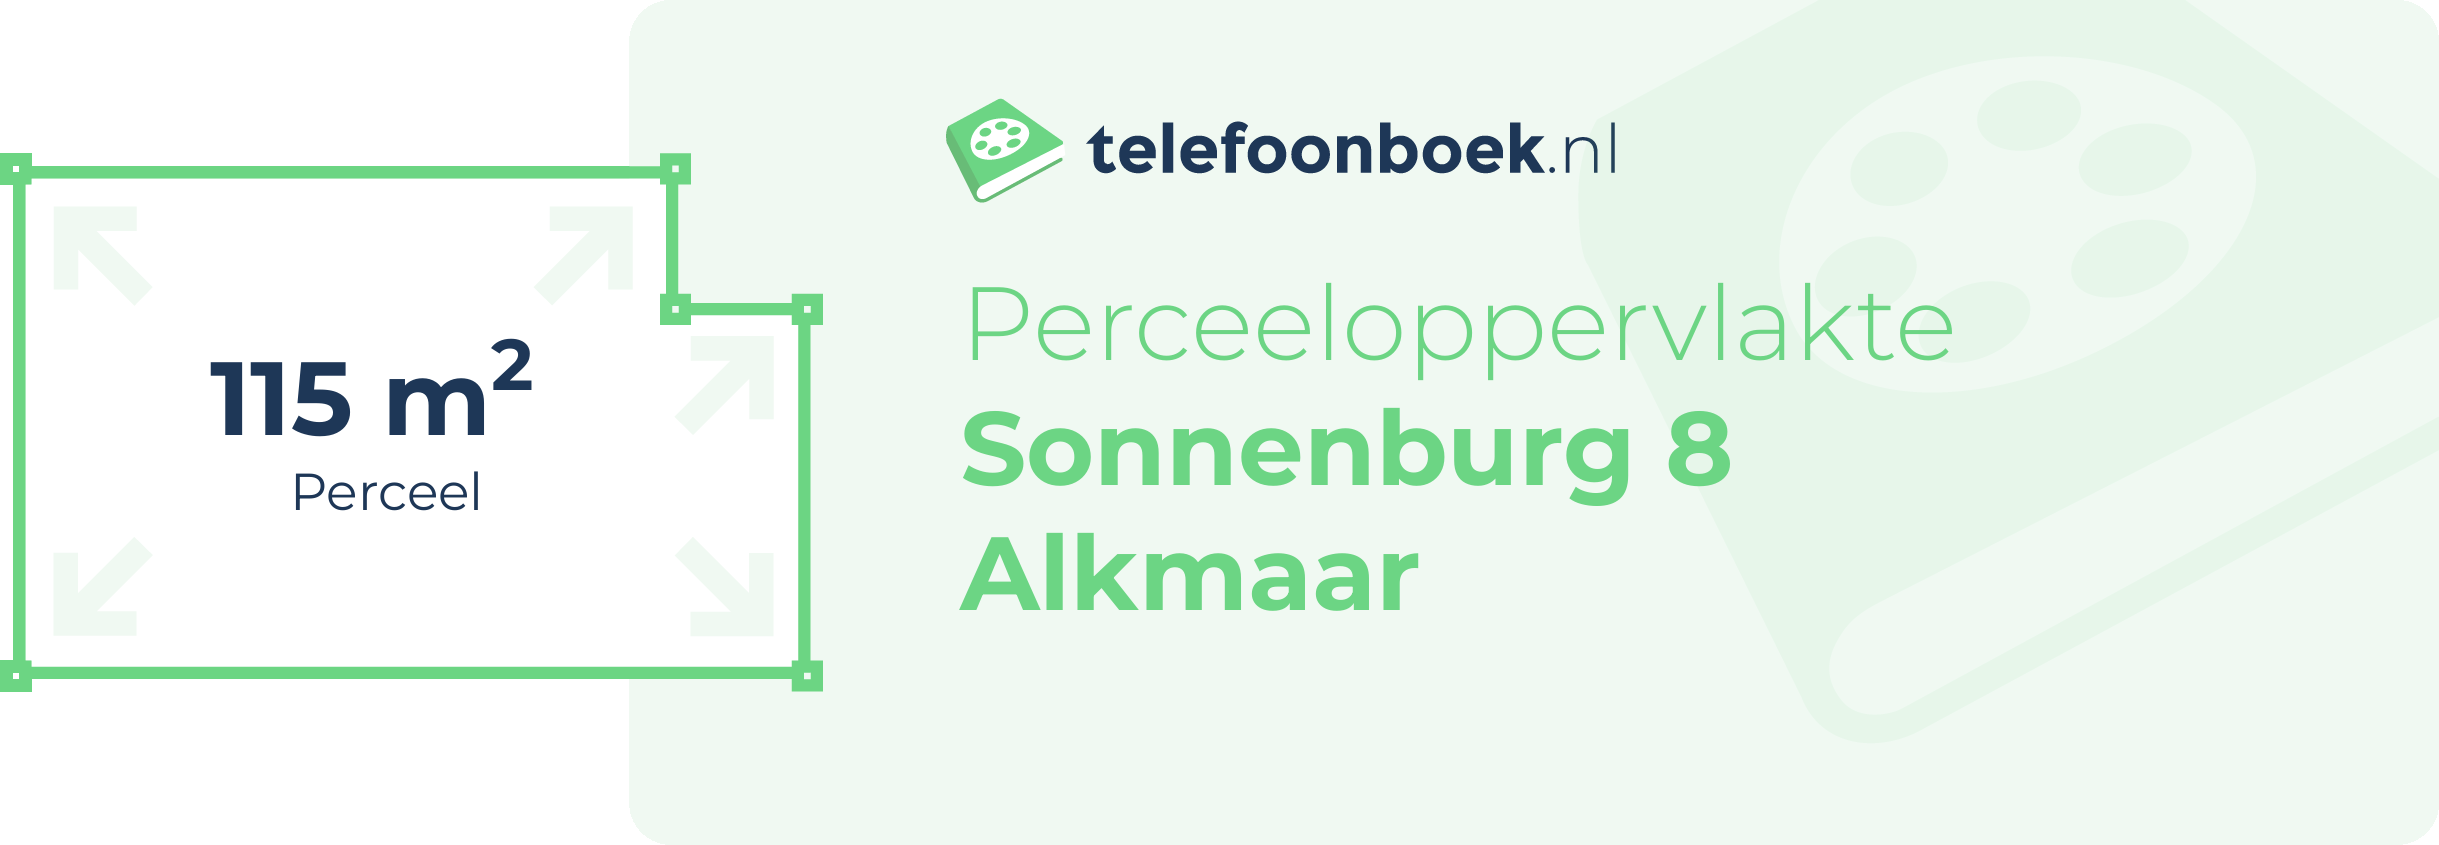 Perceeloppervlakte Sonnenburg 8 Alkmaar